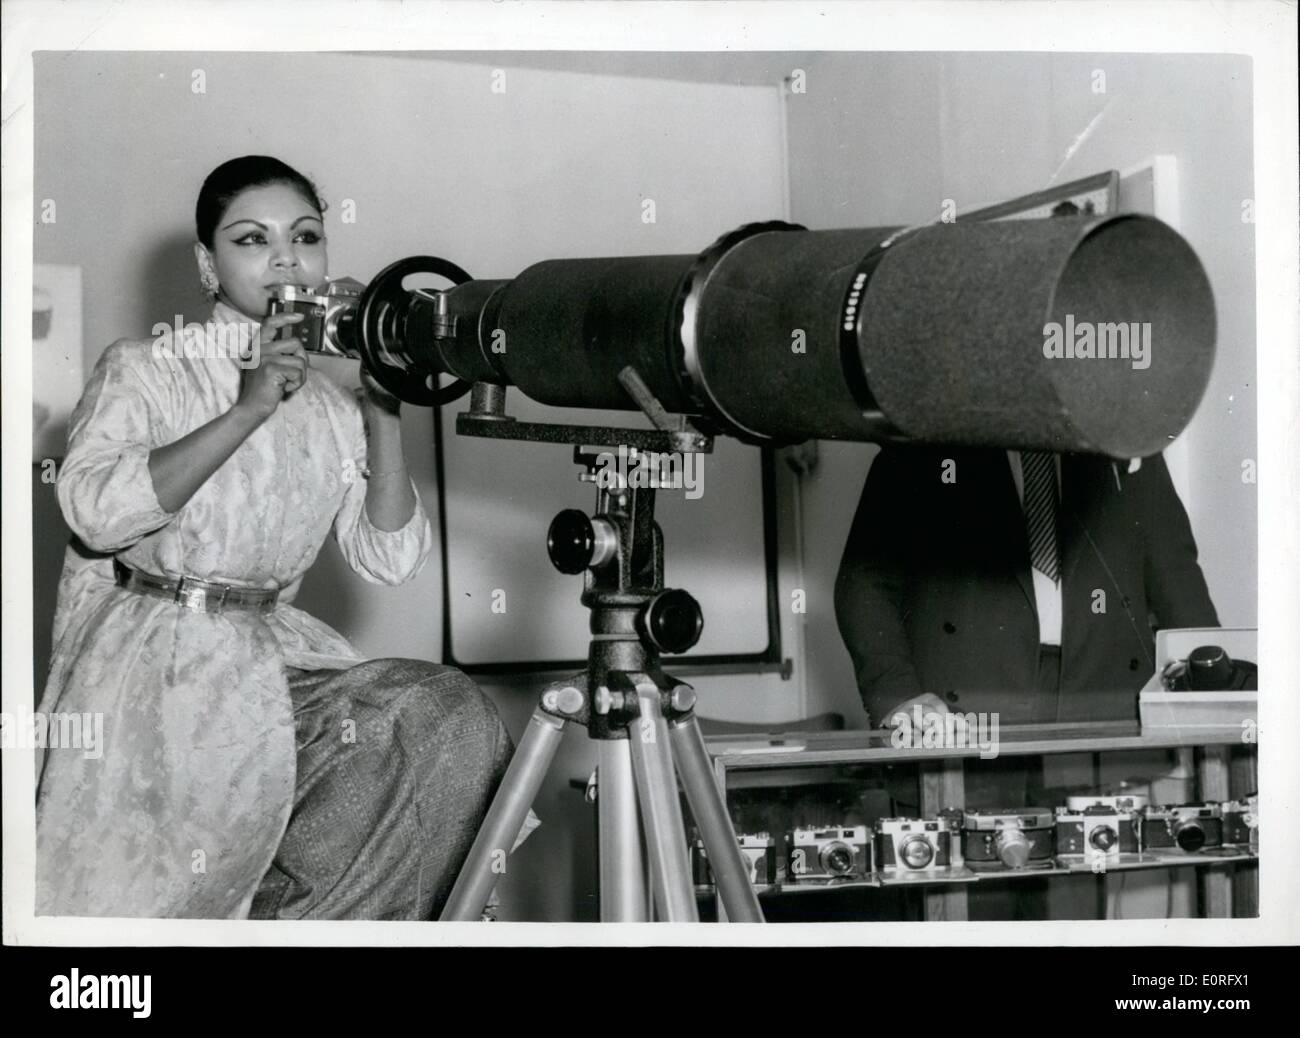 05 mai 1959 - International Photo Fair at Olympia. : Miss Manil Weerakoon, une actrice cinghalaise - vu à la foire international de photos ouvert à l'Olympia aujourd'hui. Avec un téléobjectif 1 000 millimètres. Banque D'Images